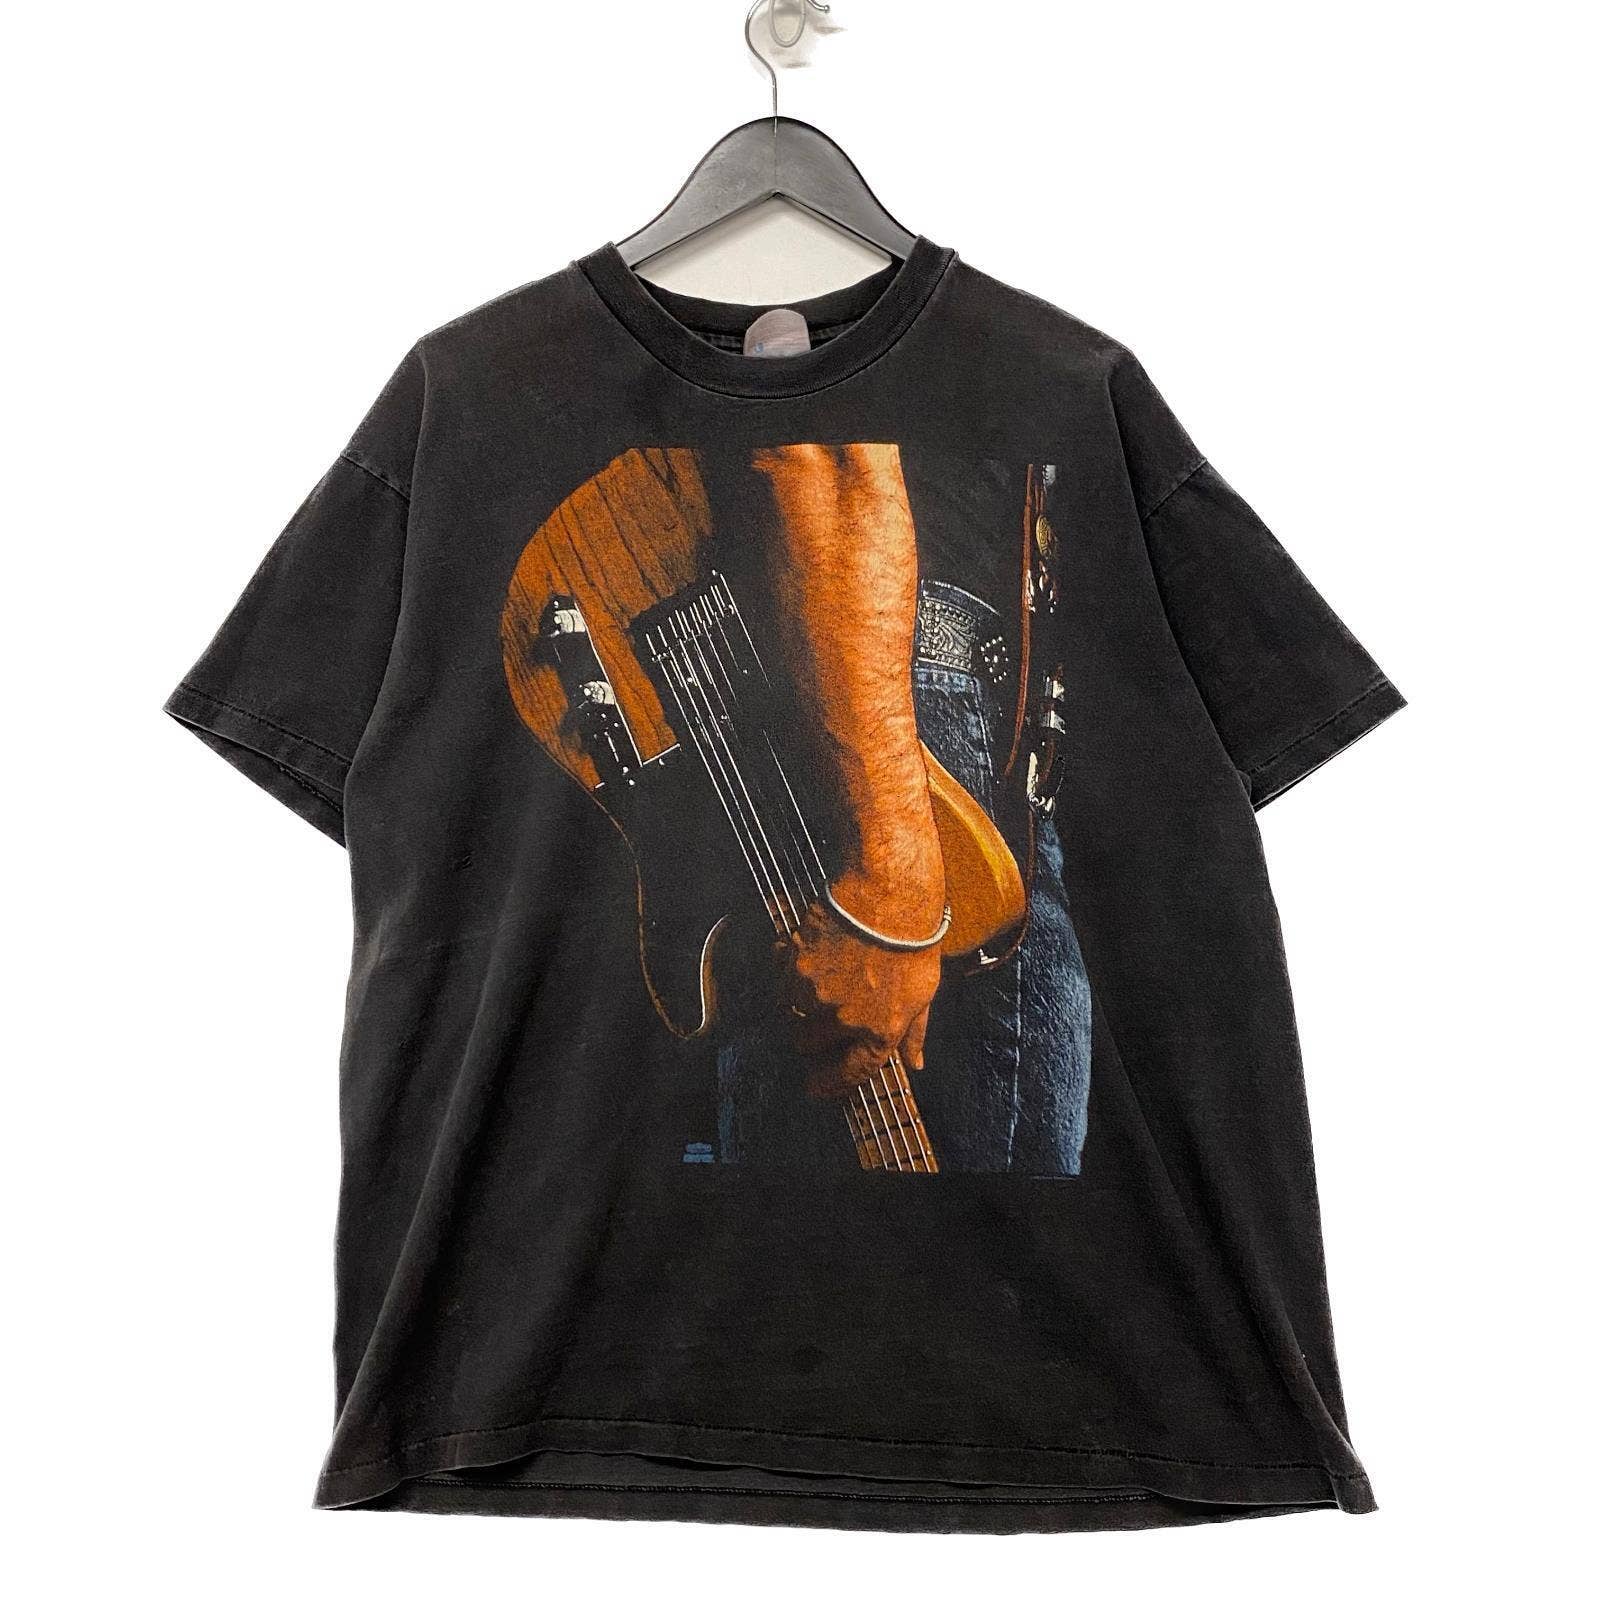 Bruce Springsteen World Tour T-shirt Size XL